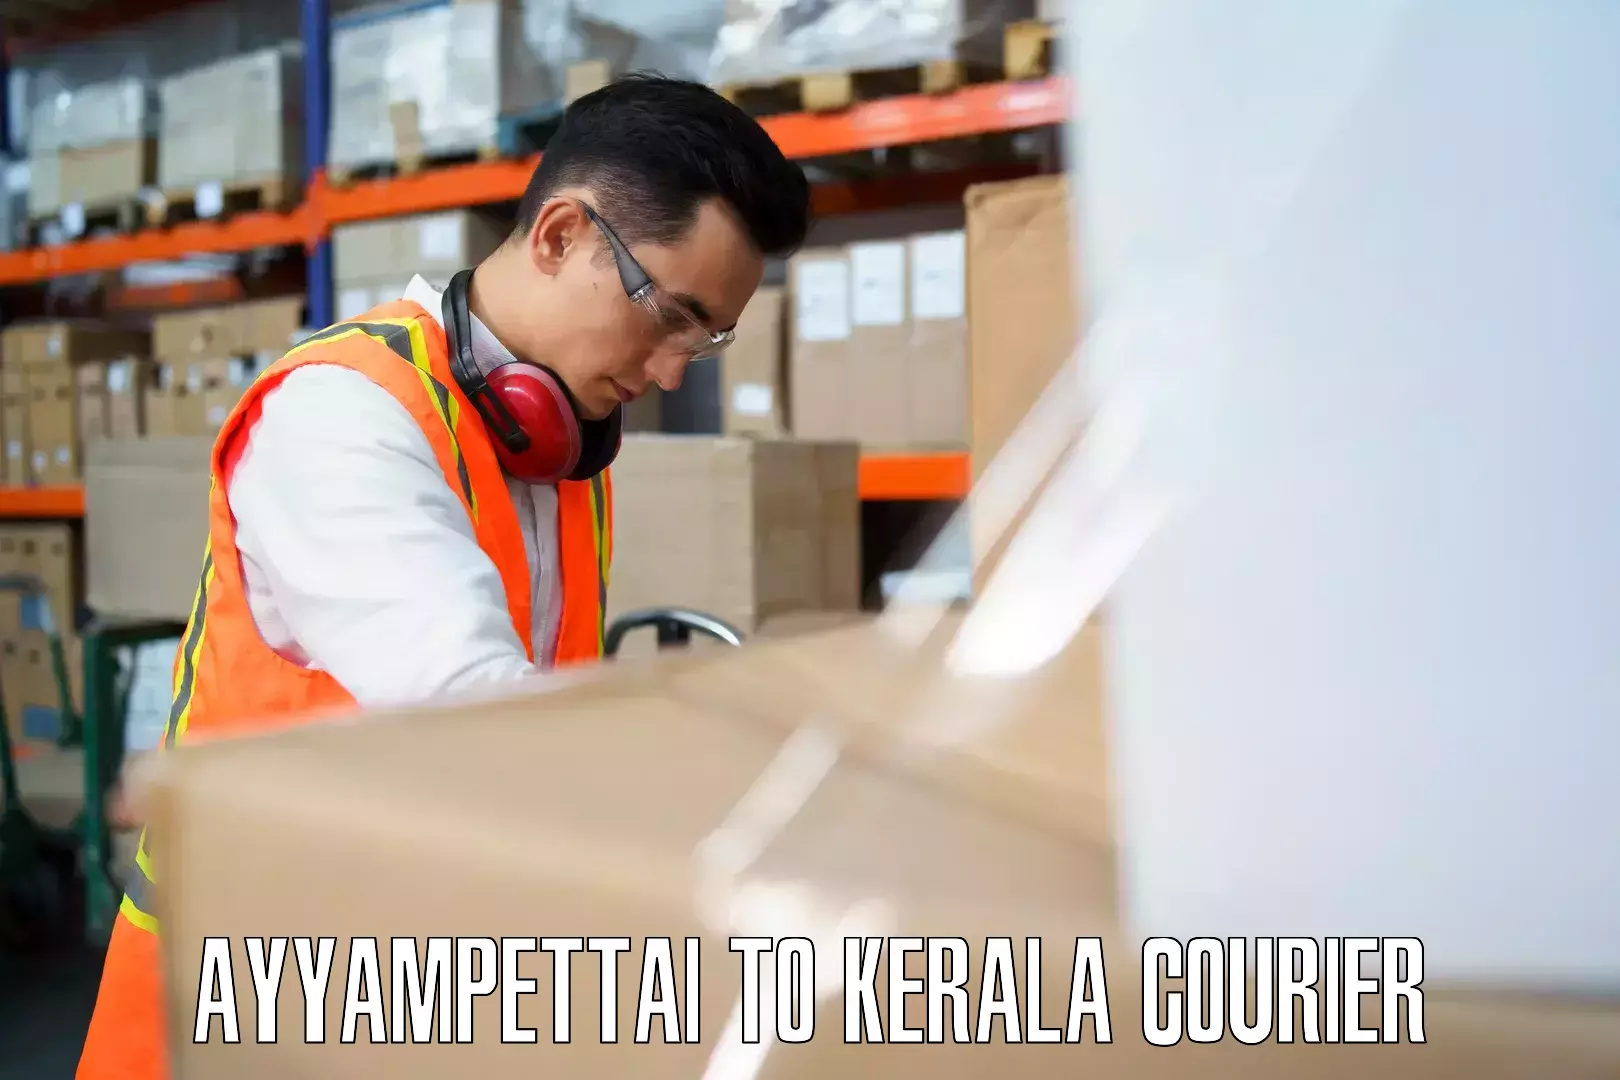 Citywide baggage courier Ayyampettai to Kottarakkara